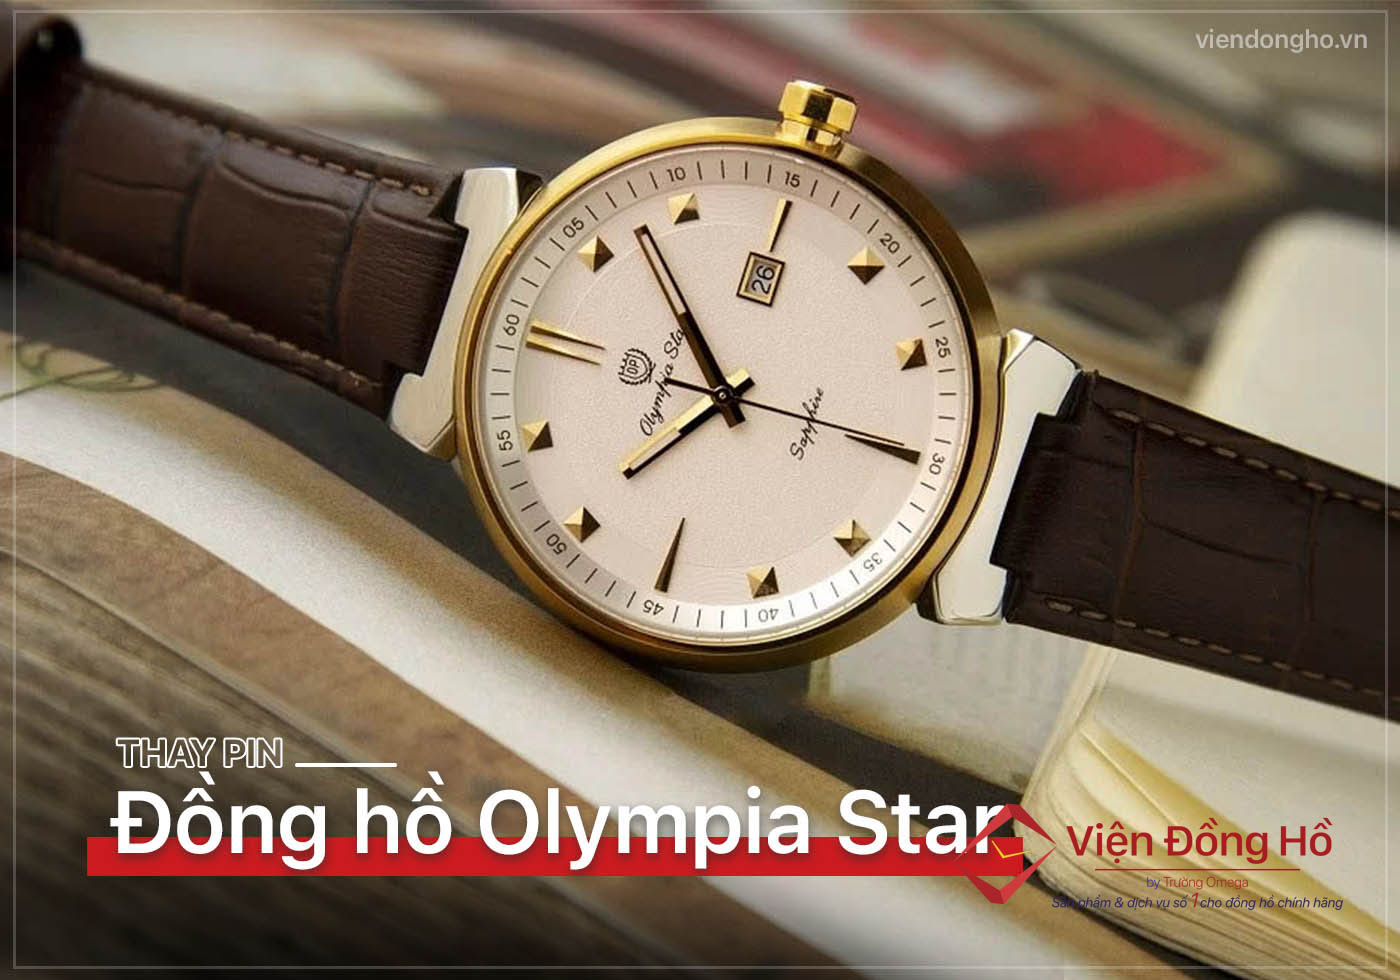 Thay pin dong ho Olympia Star 5